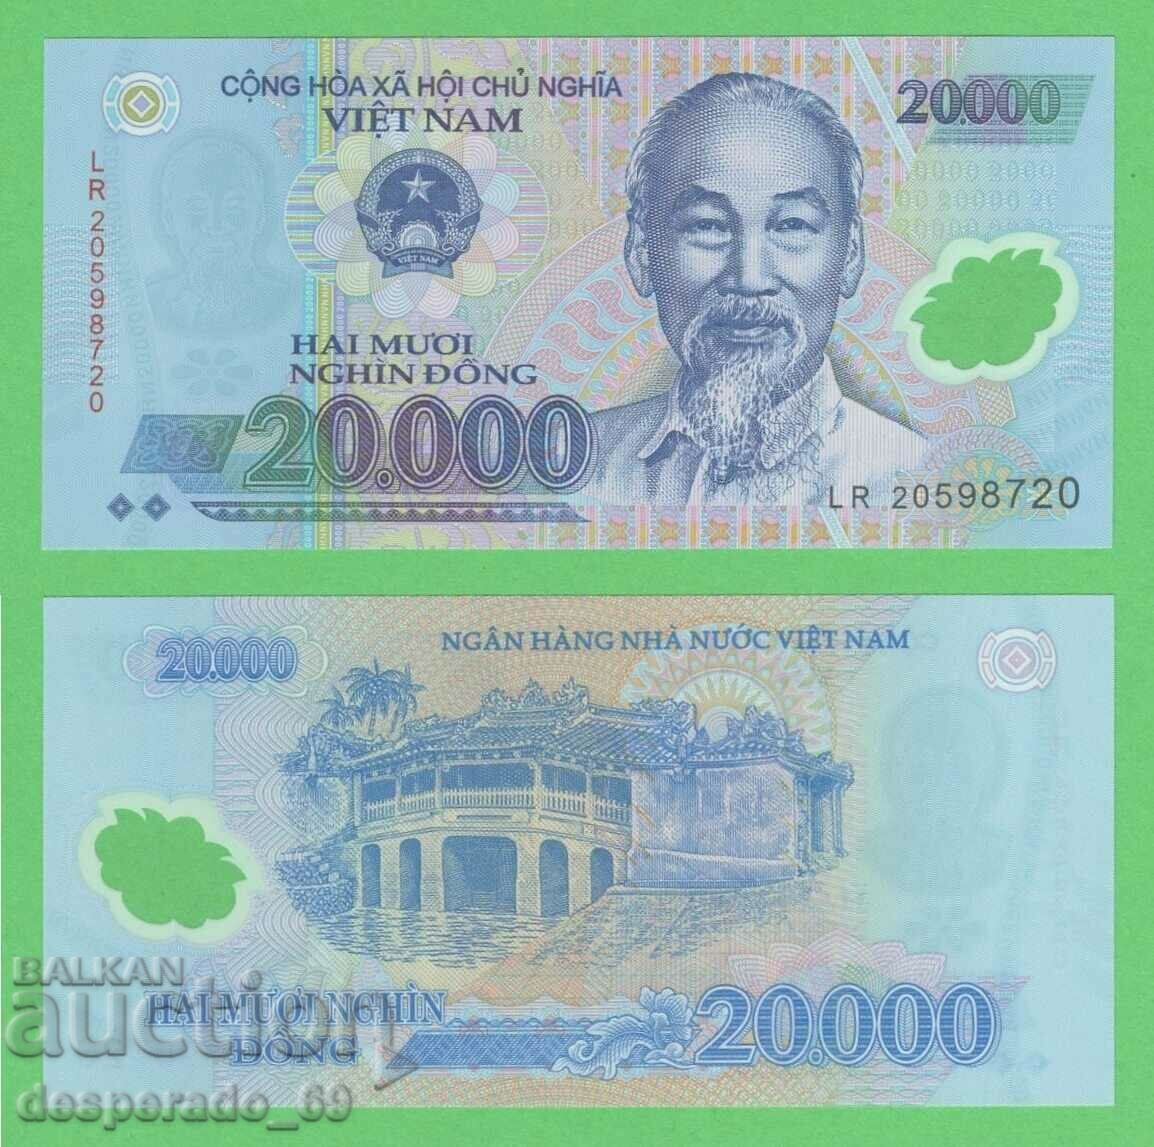 (¯`'•.¸ VIETNAM 20,000 VND 2012 UNC ¸.•'´¯)